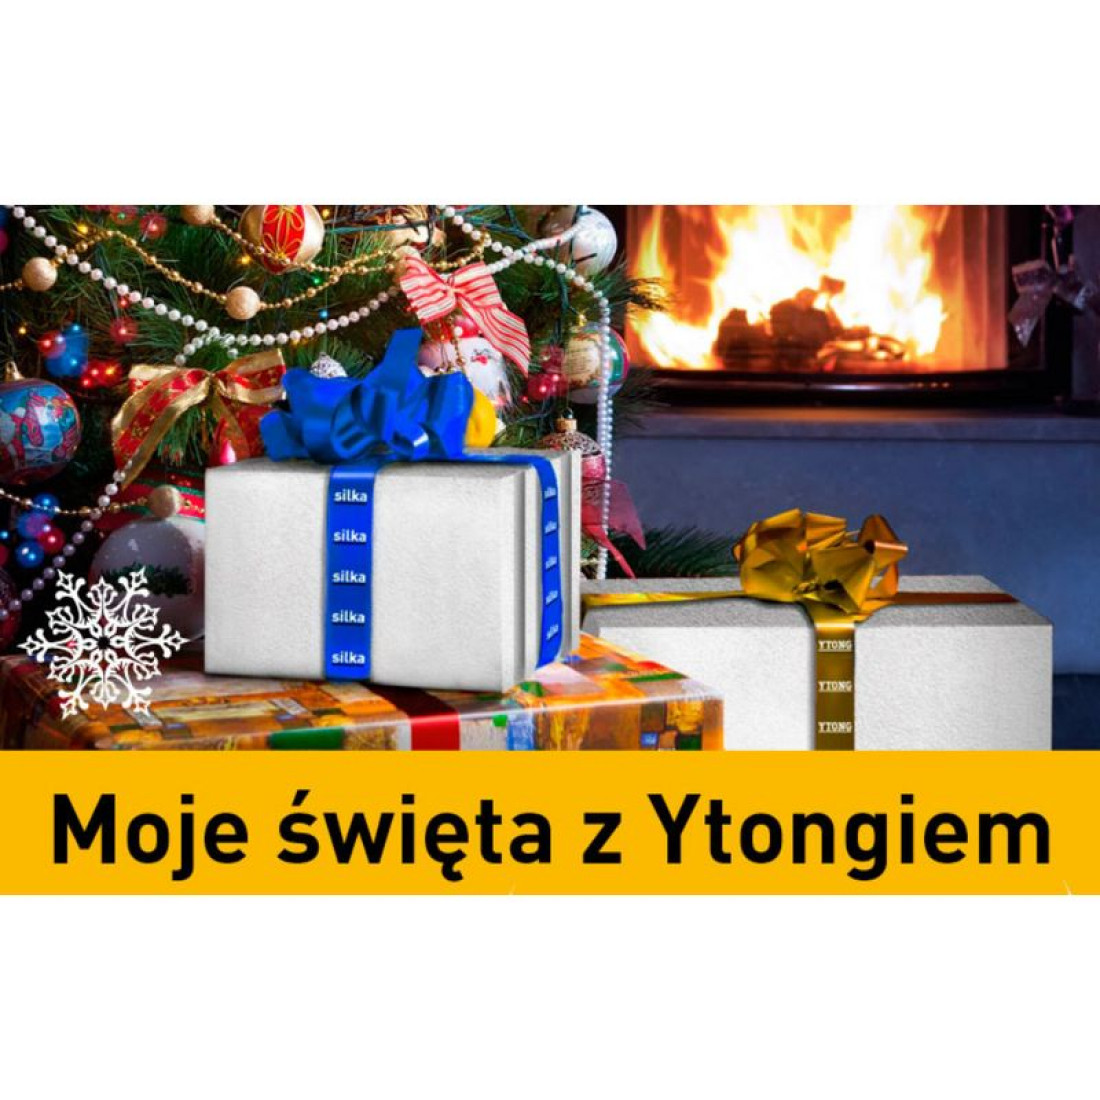 Konkurs na najlepszą rzeźbę zimową i świąteczną z Ytong